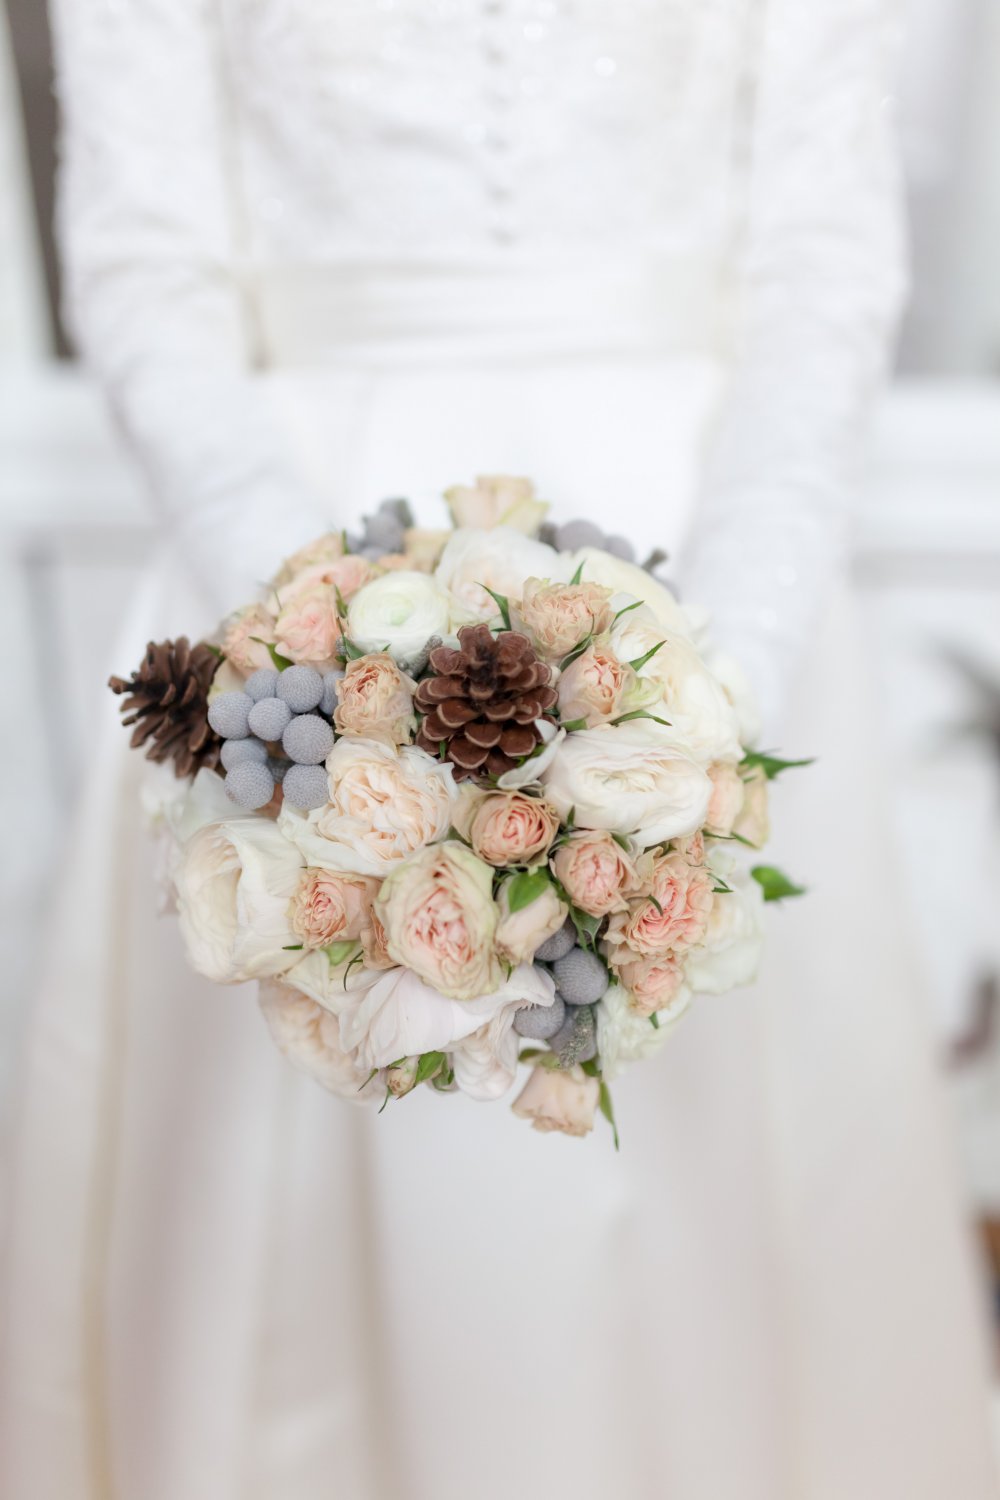 Букет невесты из ранункулусов, роз, брунии и шишек